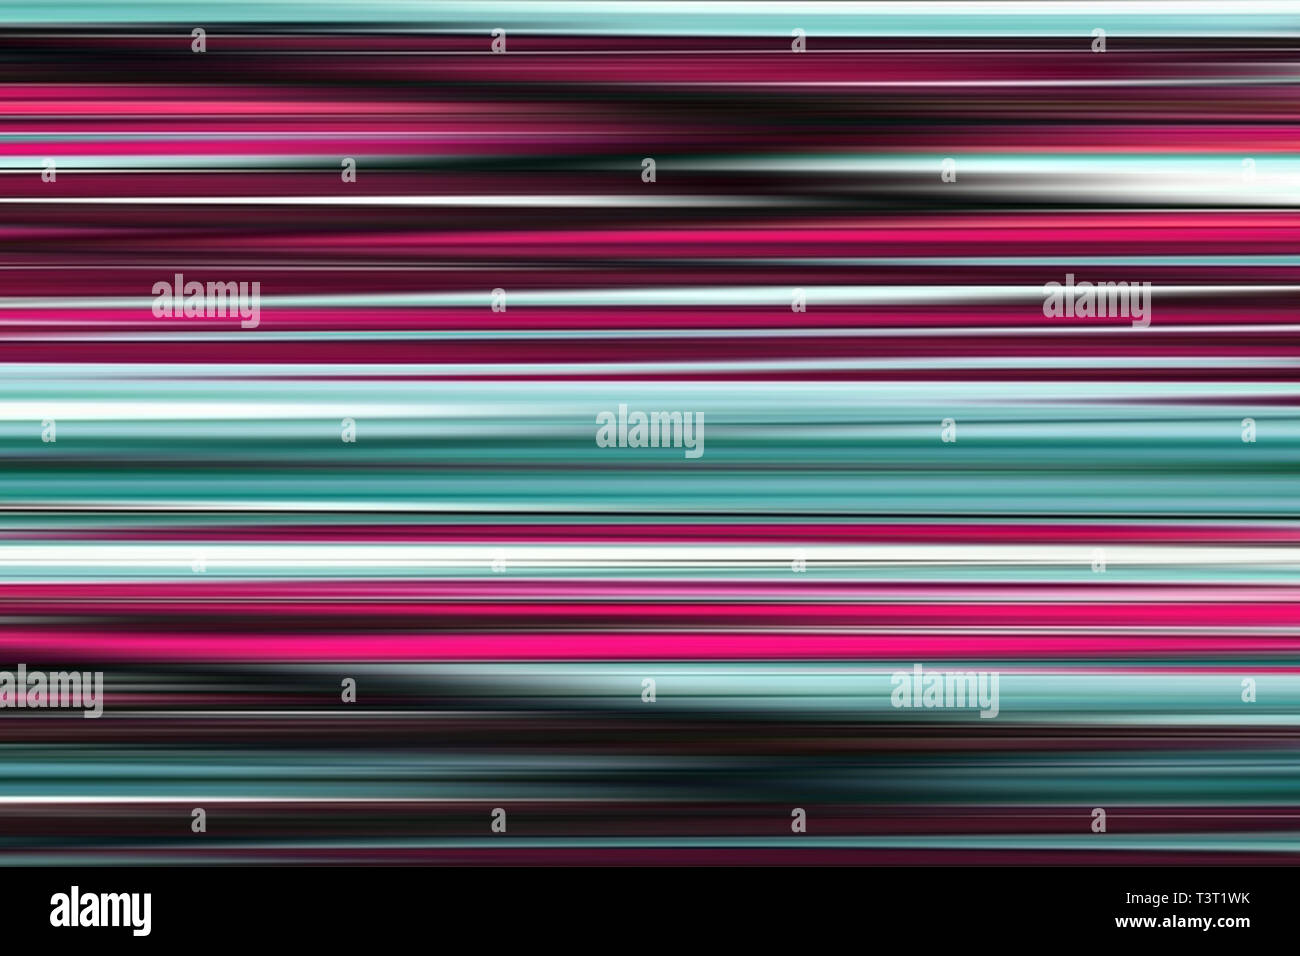 Farbenfrohe abstrakte hellen Linien, Hintergrund, horizontal gestreifte Textur in Lila und türkis Tönen. Muster für Web-Design, Website, Präsentationen Stockfoto